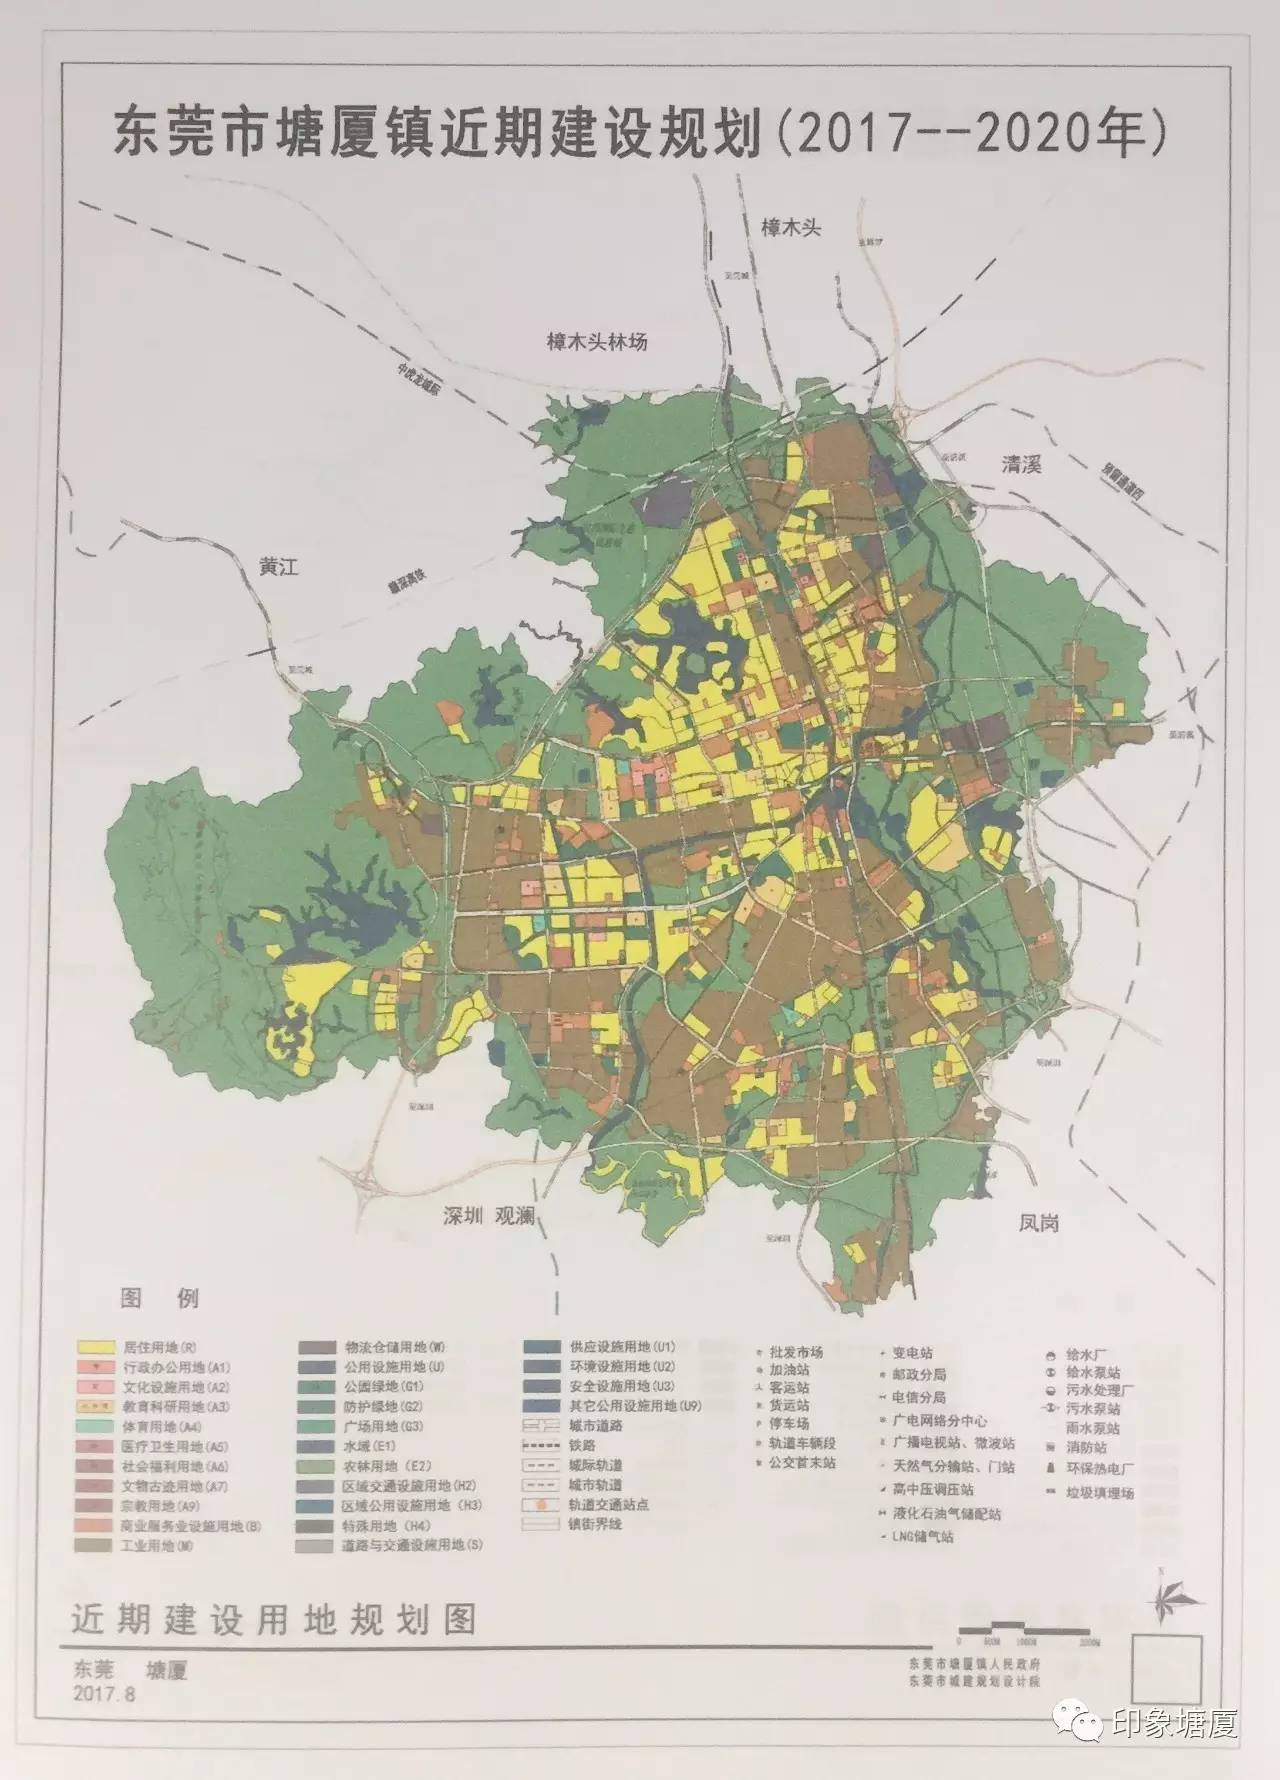 塘厦镇近期(2017-2020)建设规划将构建